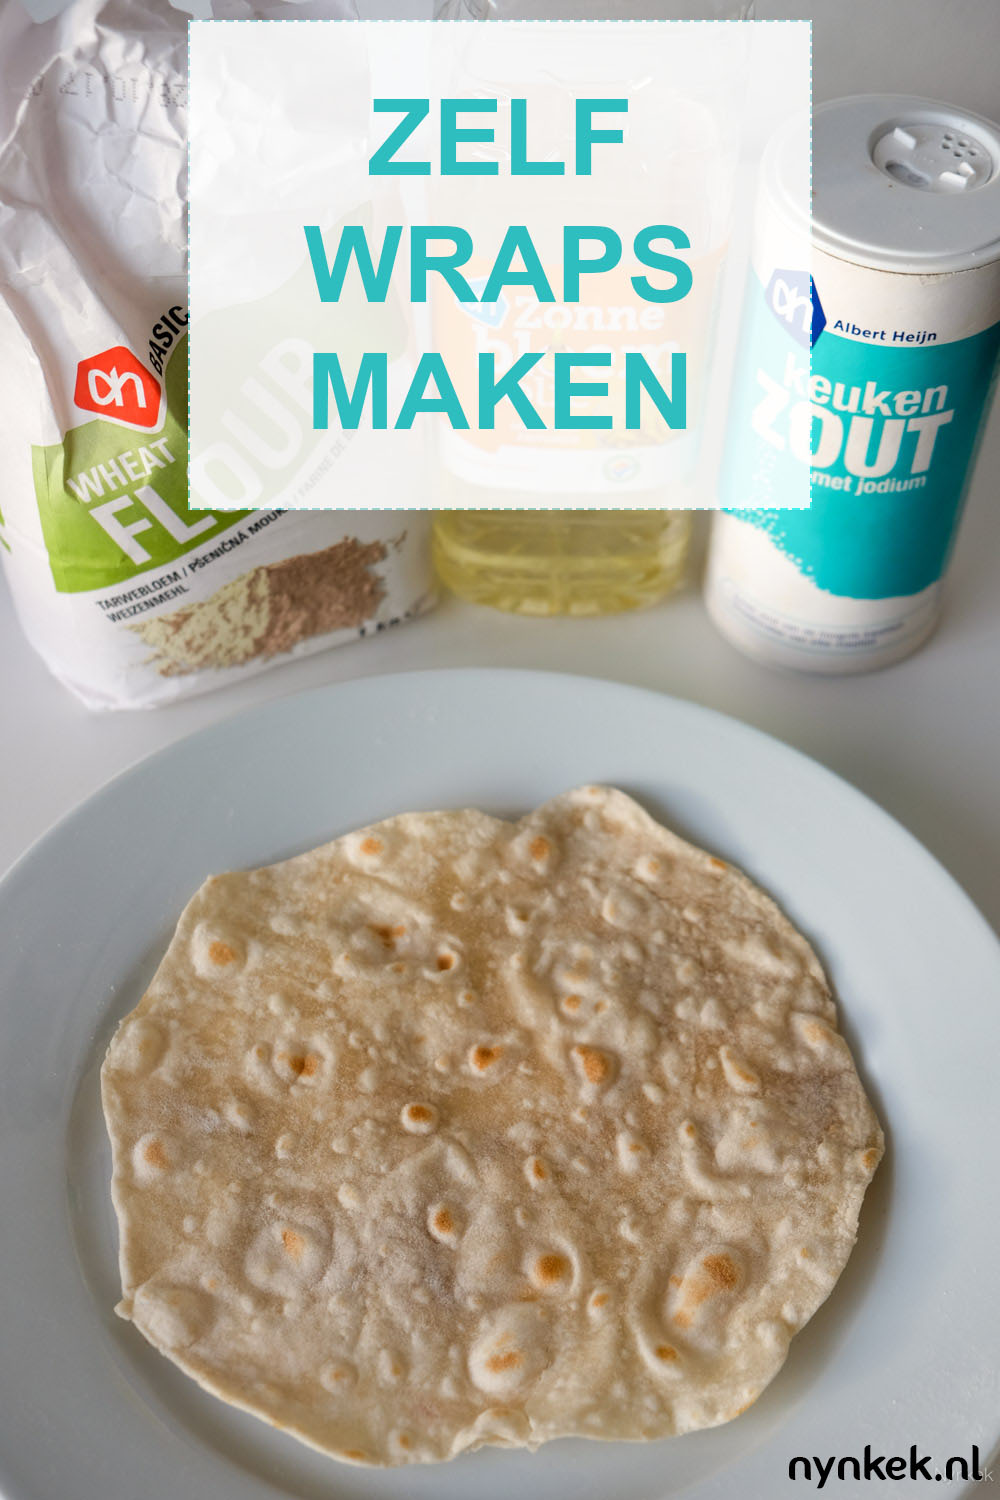 Zelf tortillawraps maken met maar 4 ingrediënten! Makkelijk recept op nynkek.nl